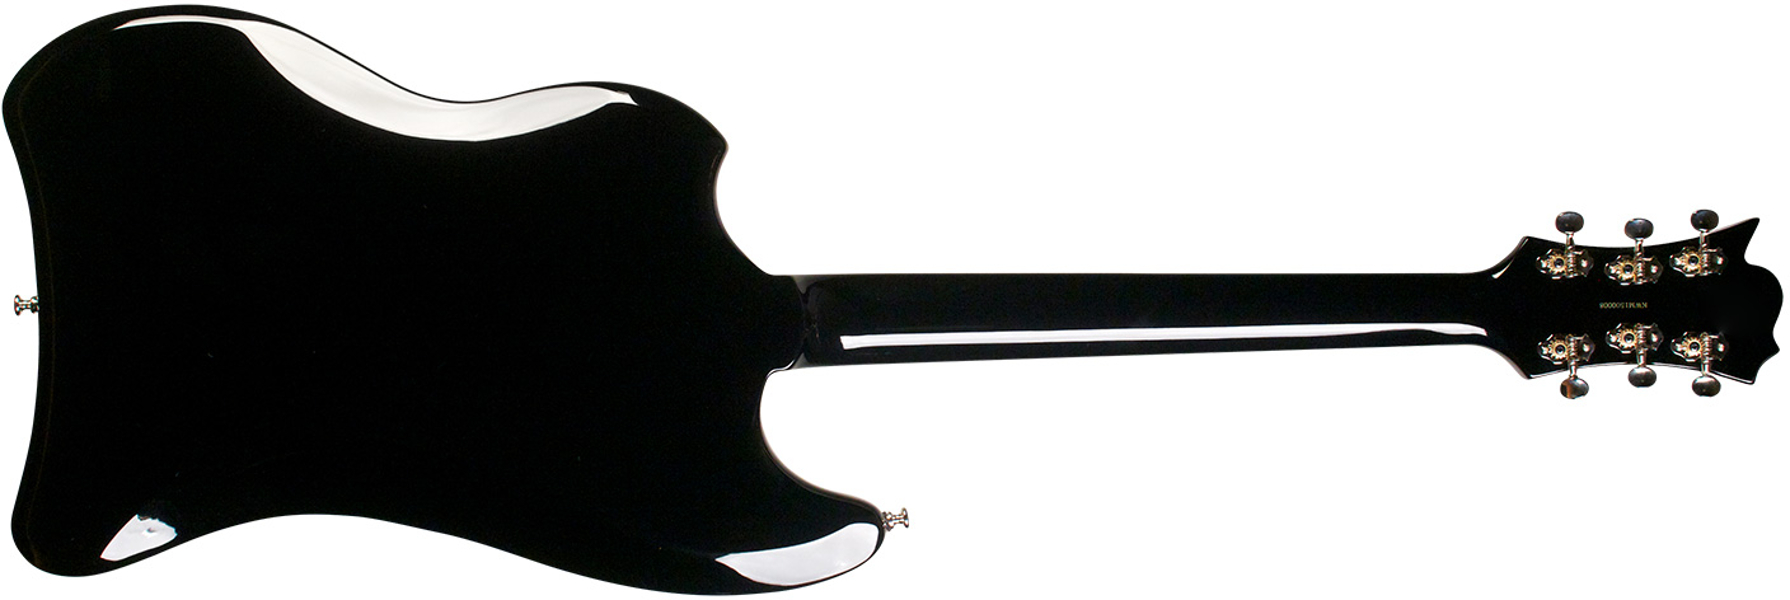 Guild S-200 T-bird - Noir - Retro-rock elektrische gitaar - Variation 3